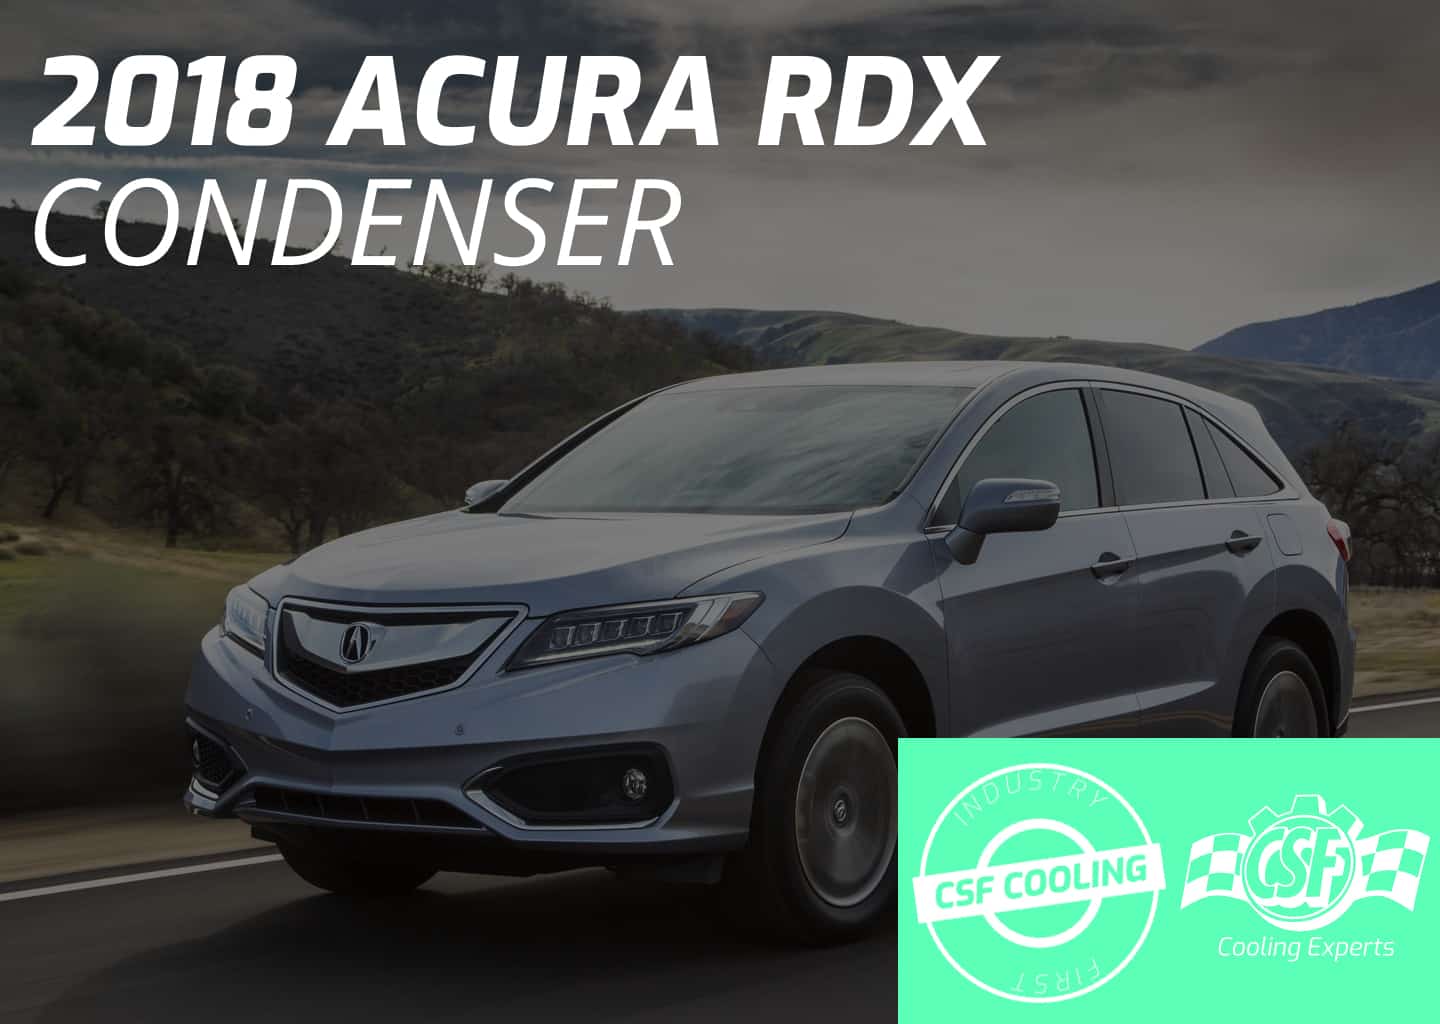 2018 Acura RDX Condenser